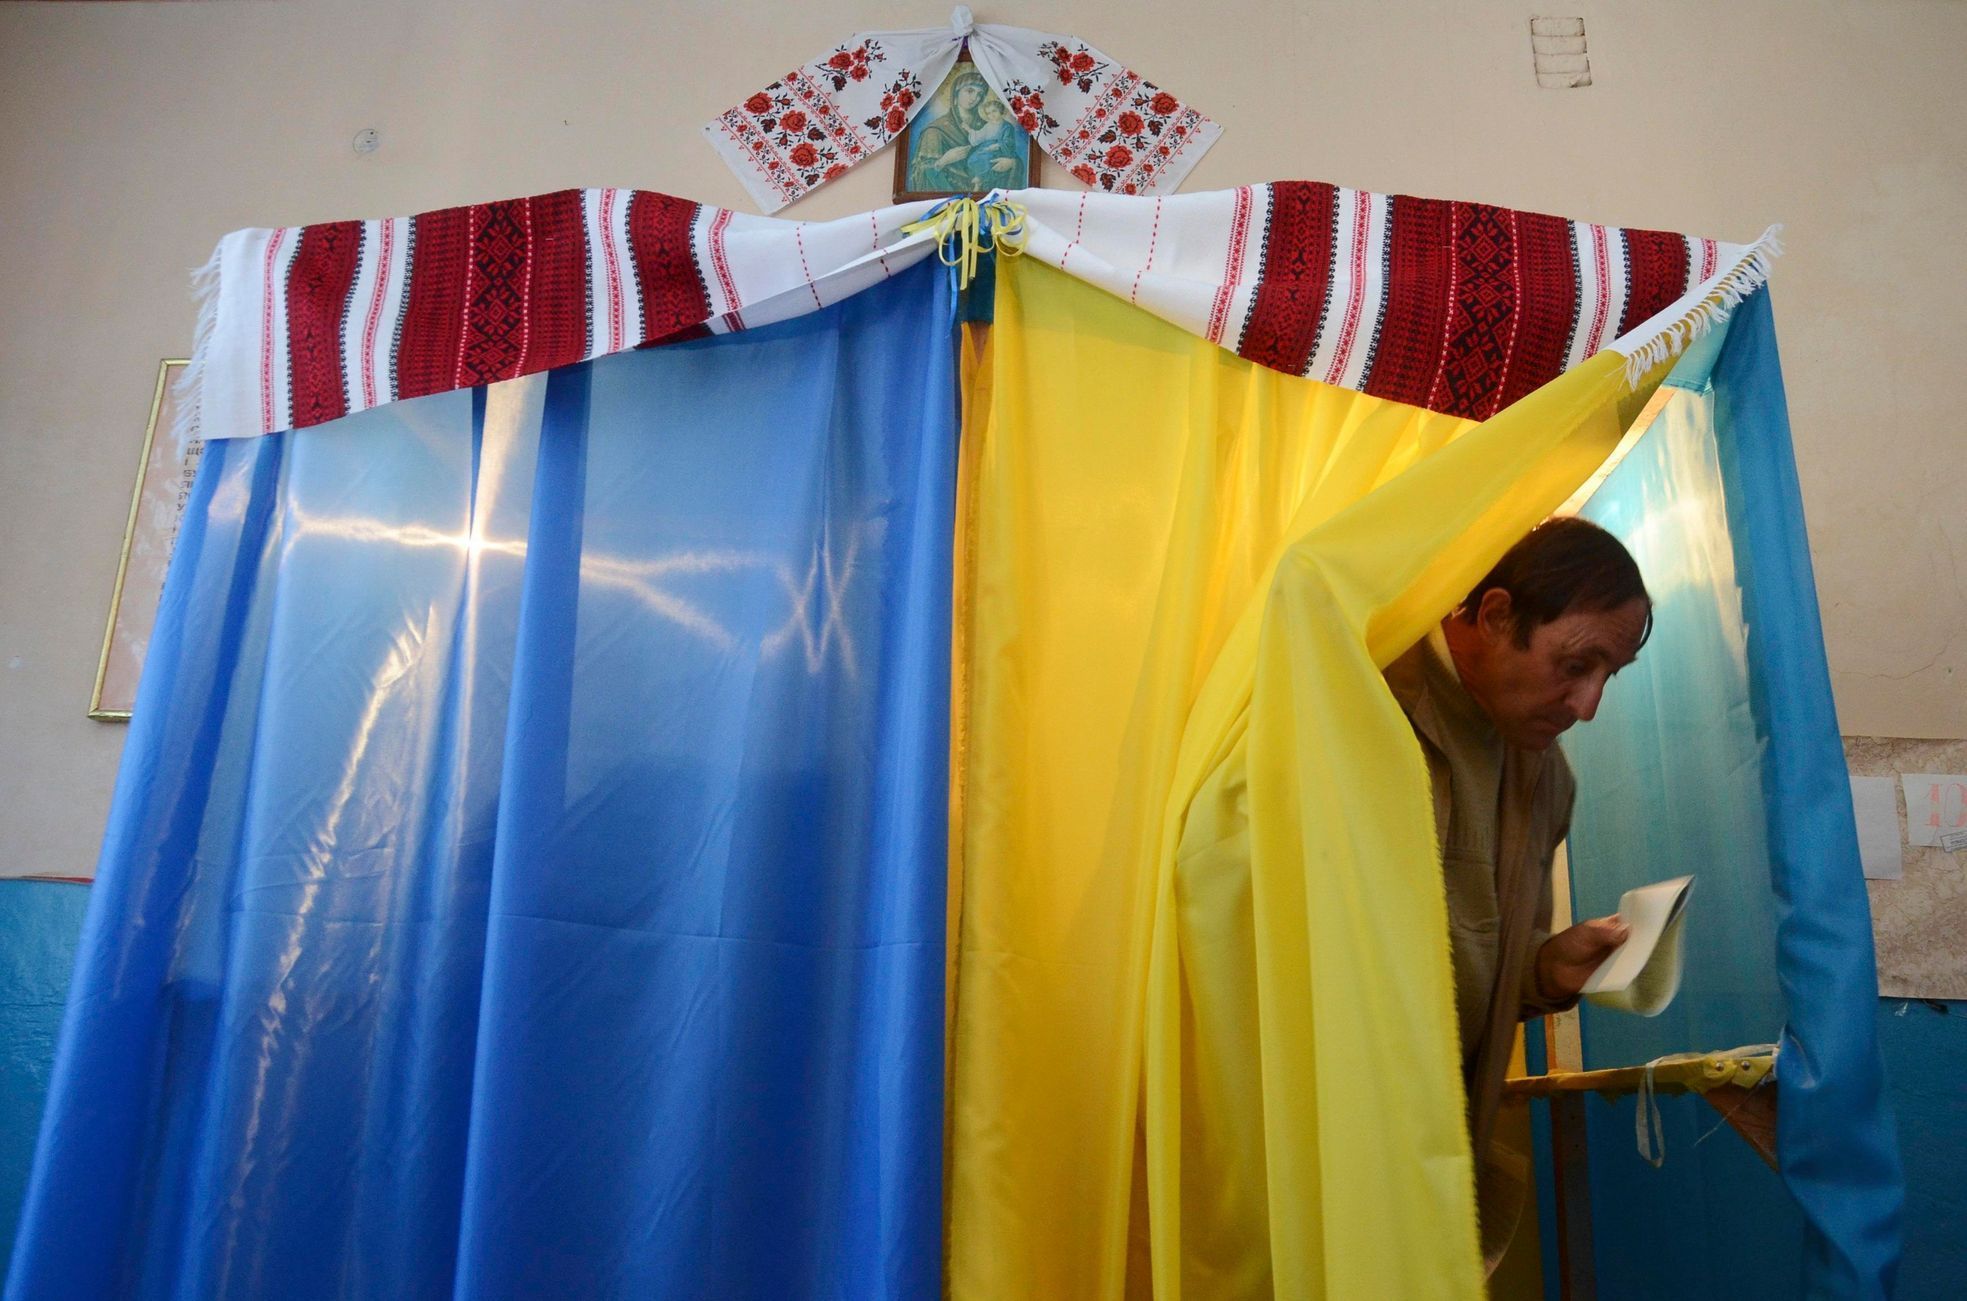 ukrajina volby